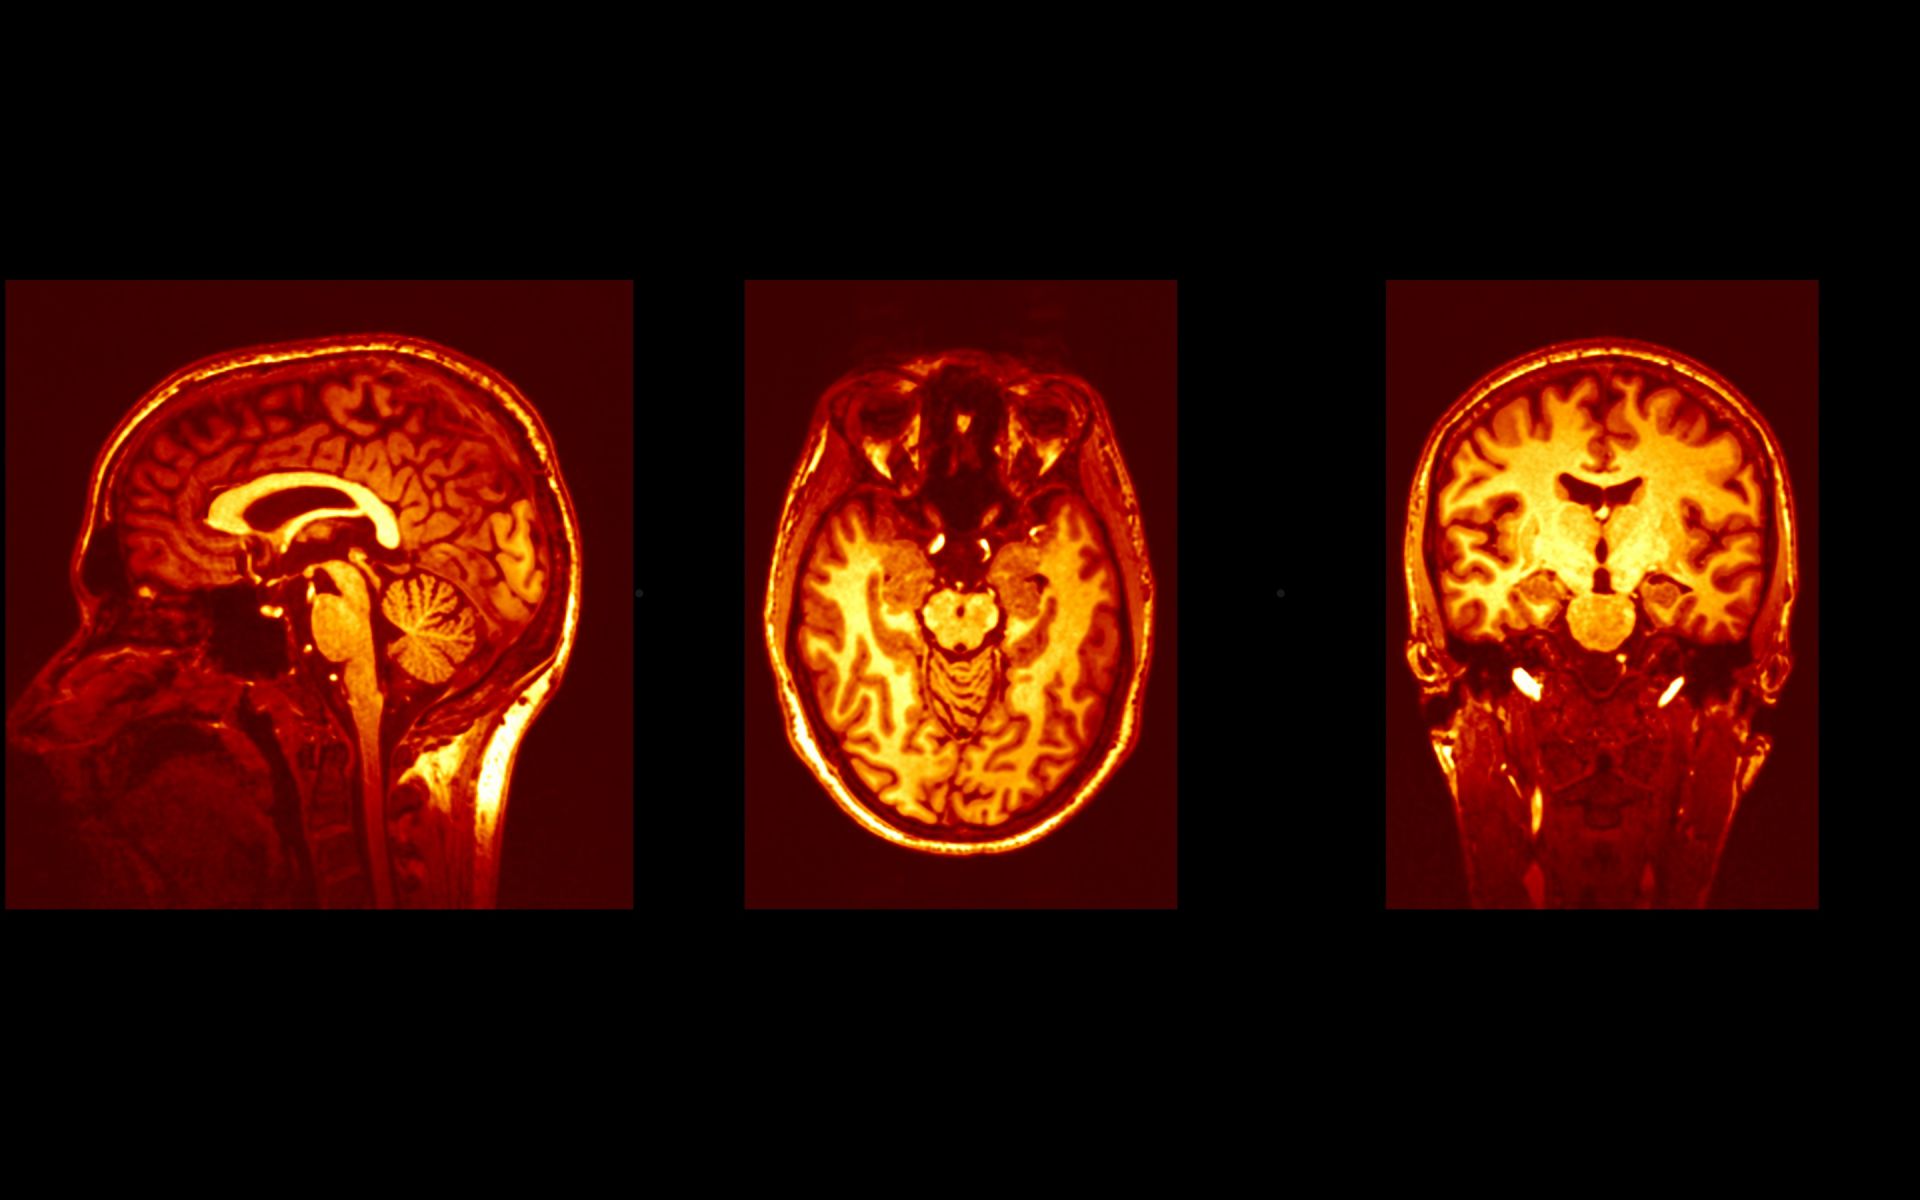 Anatomical brain images taken by MRI